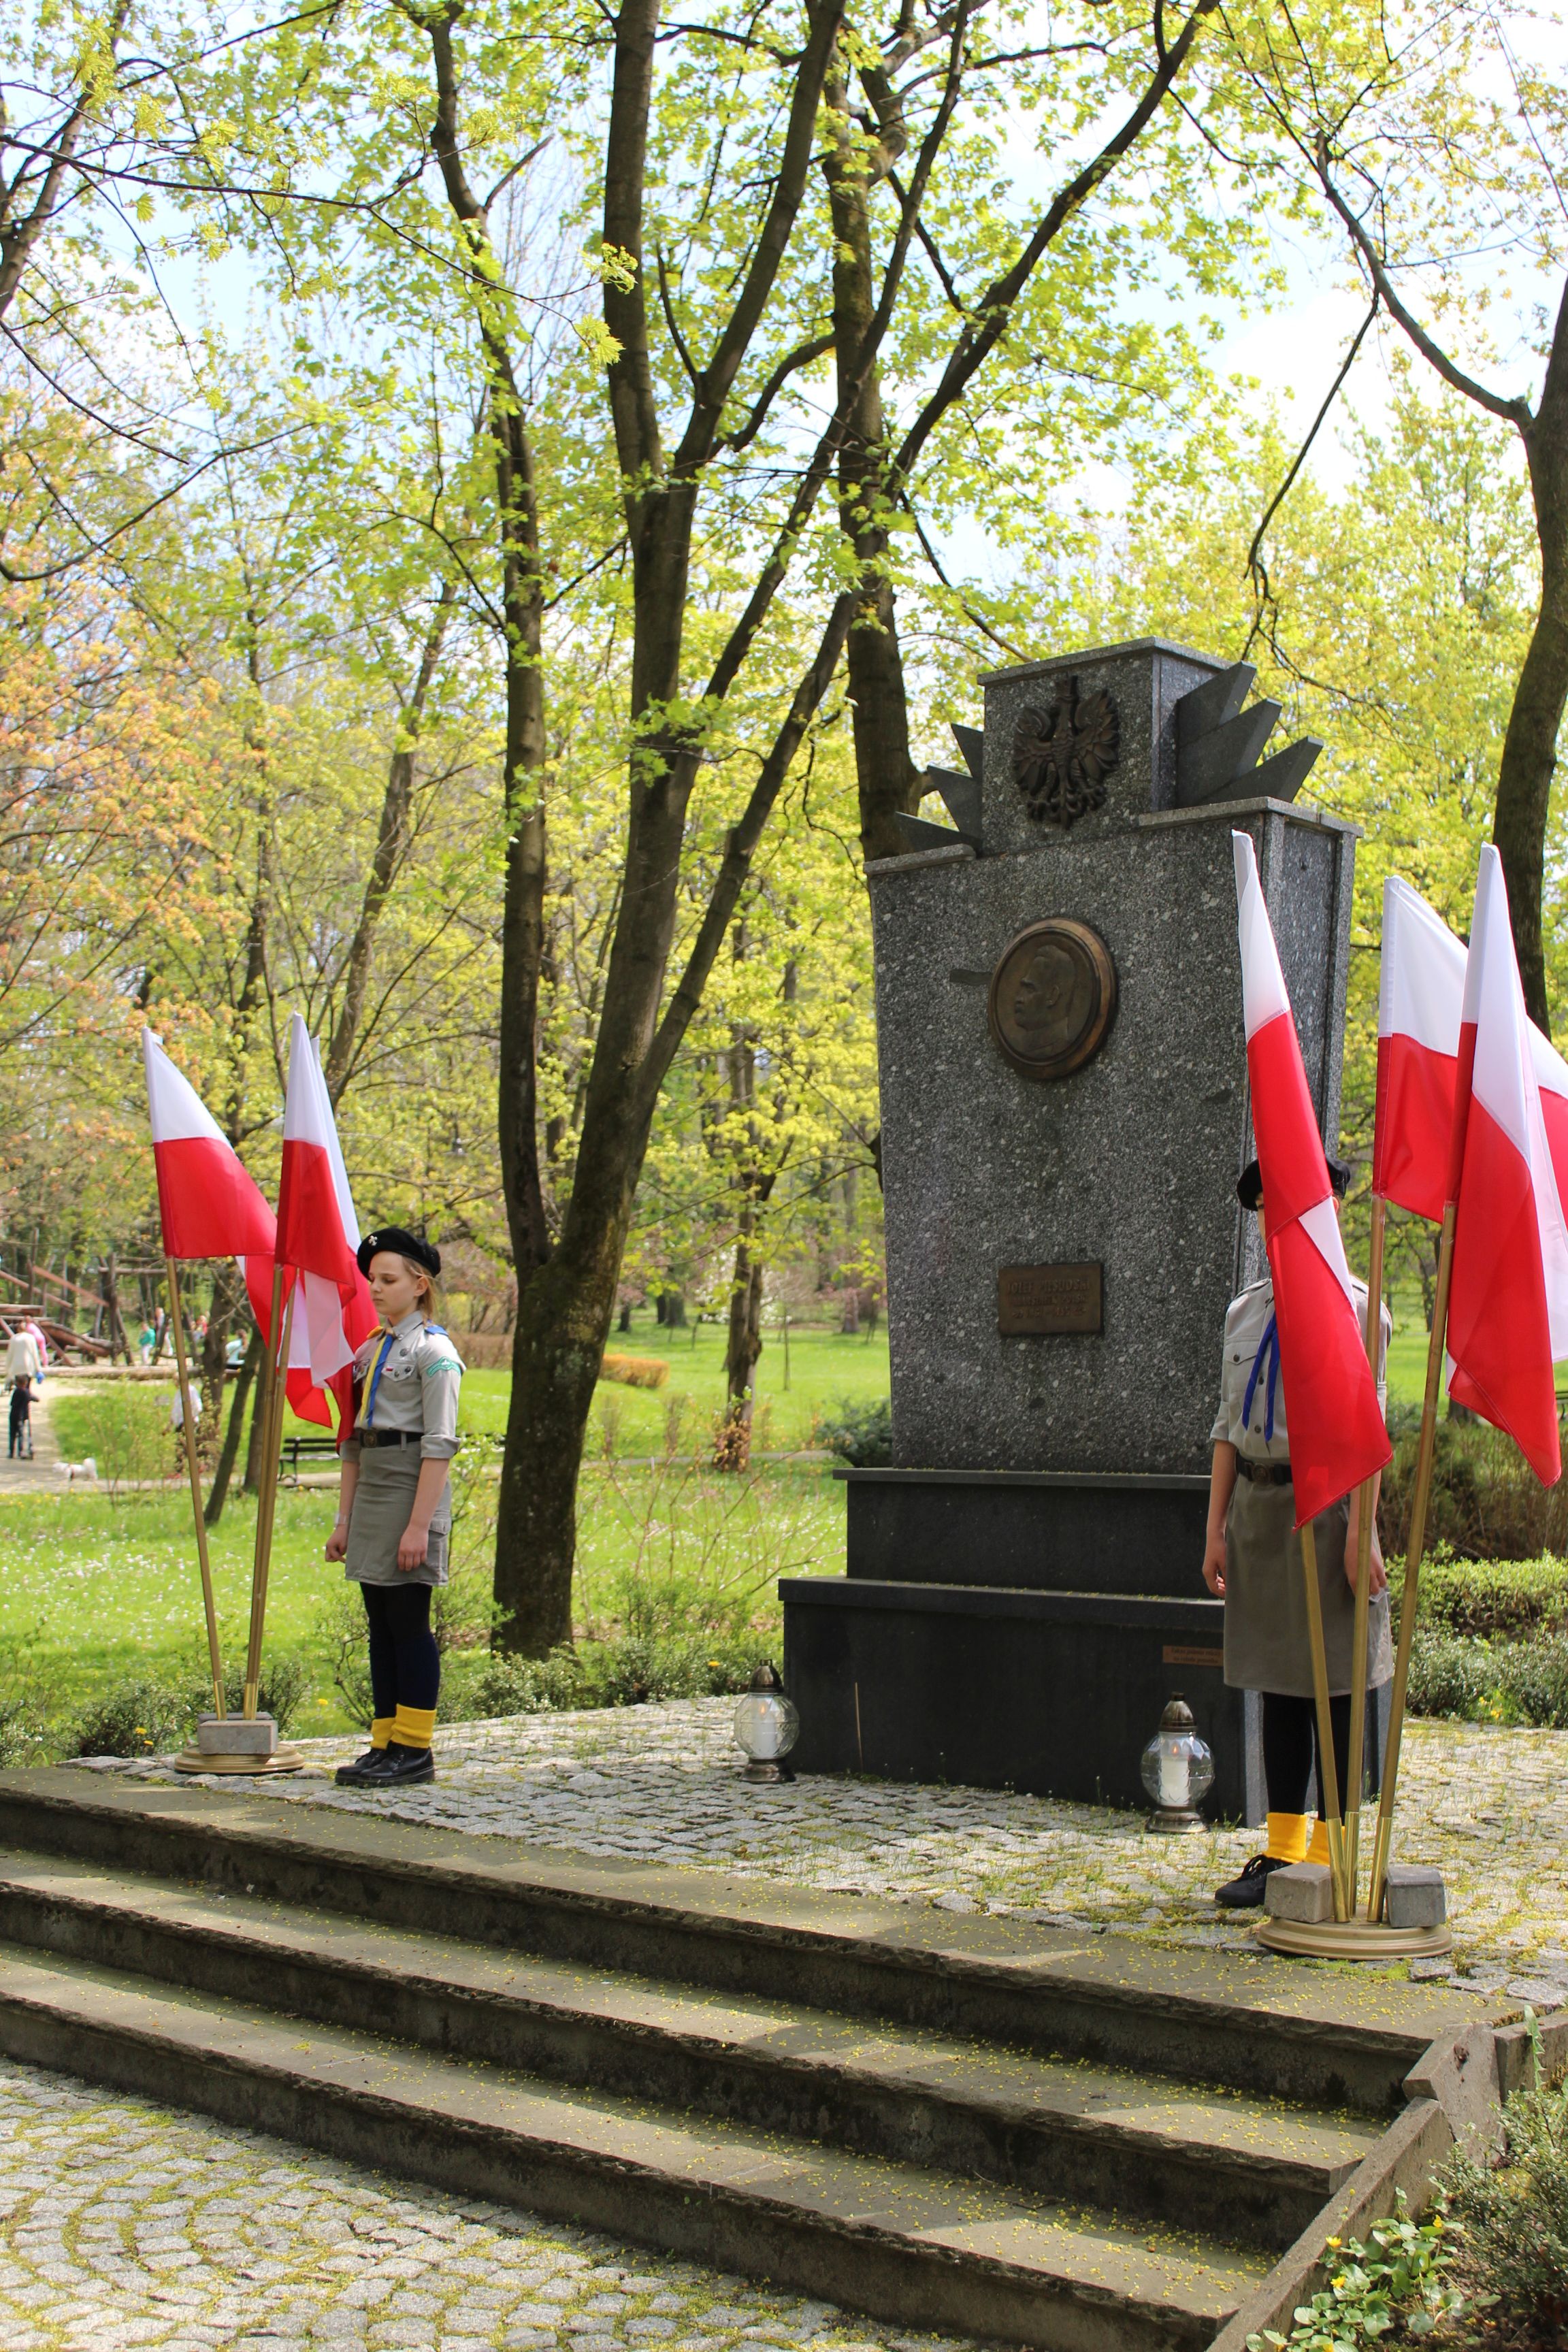 Harcerze stojący przed pomnikiem. Obok nich flagi Polski.